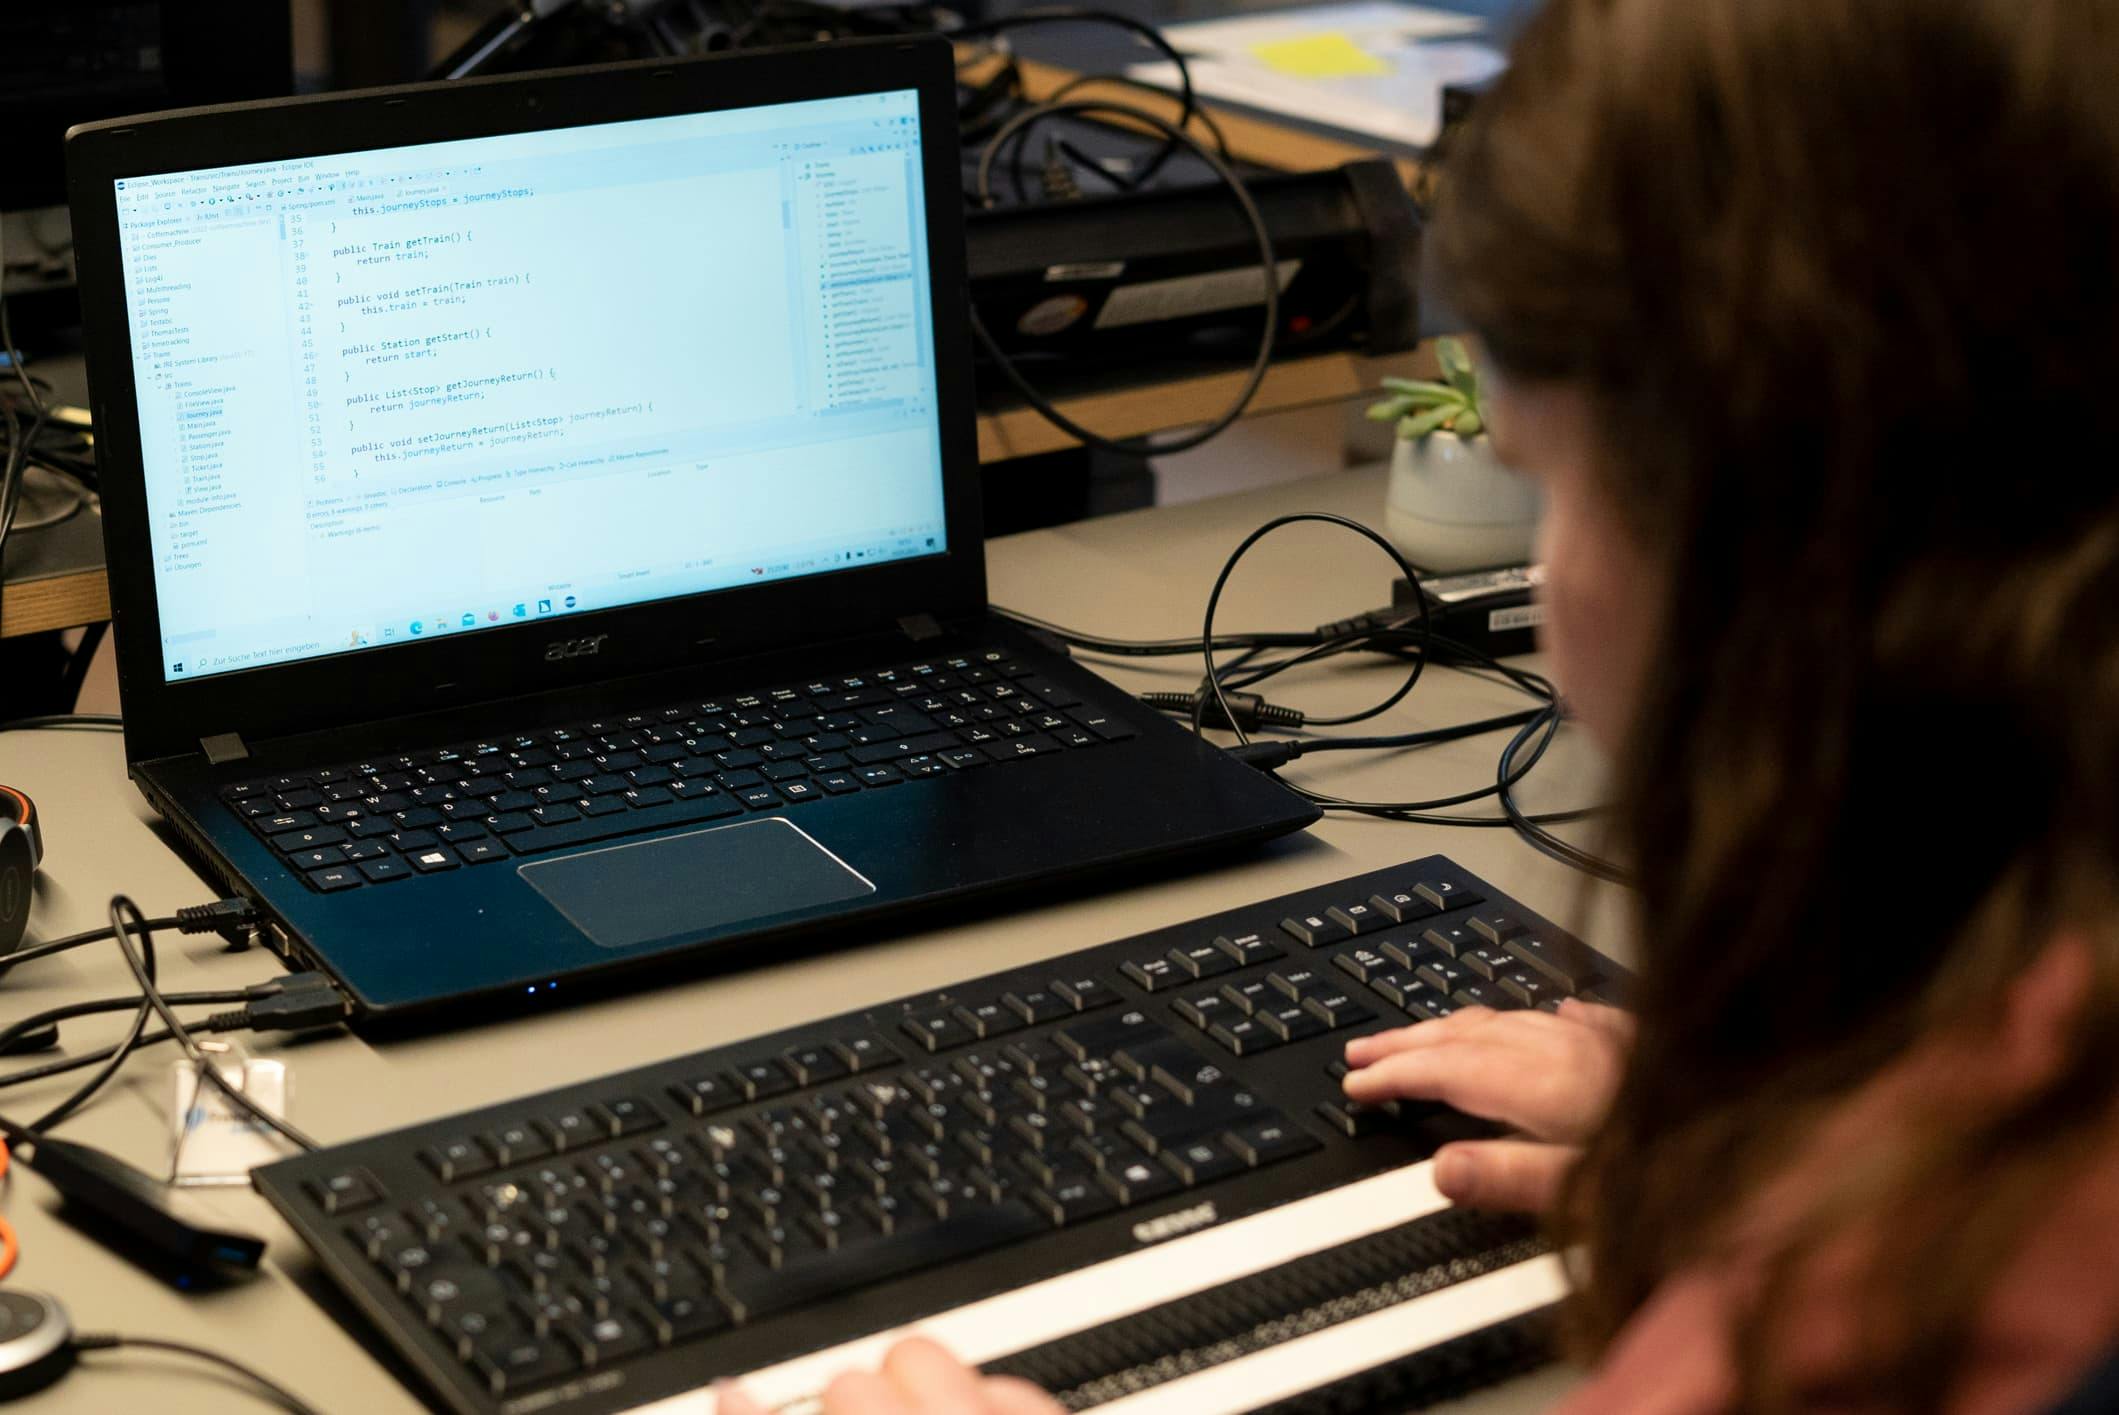 Melanie schreibt Code am Computer, ihre Hände sind auf der Braille-Tastatur